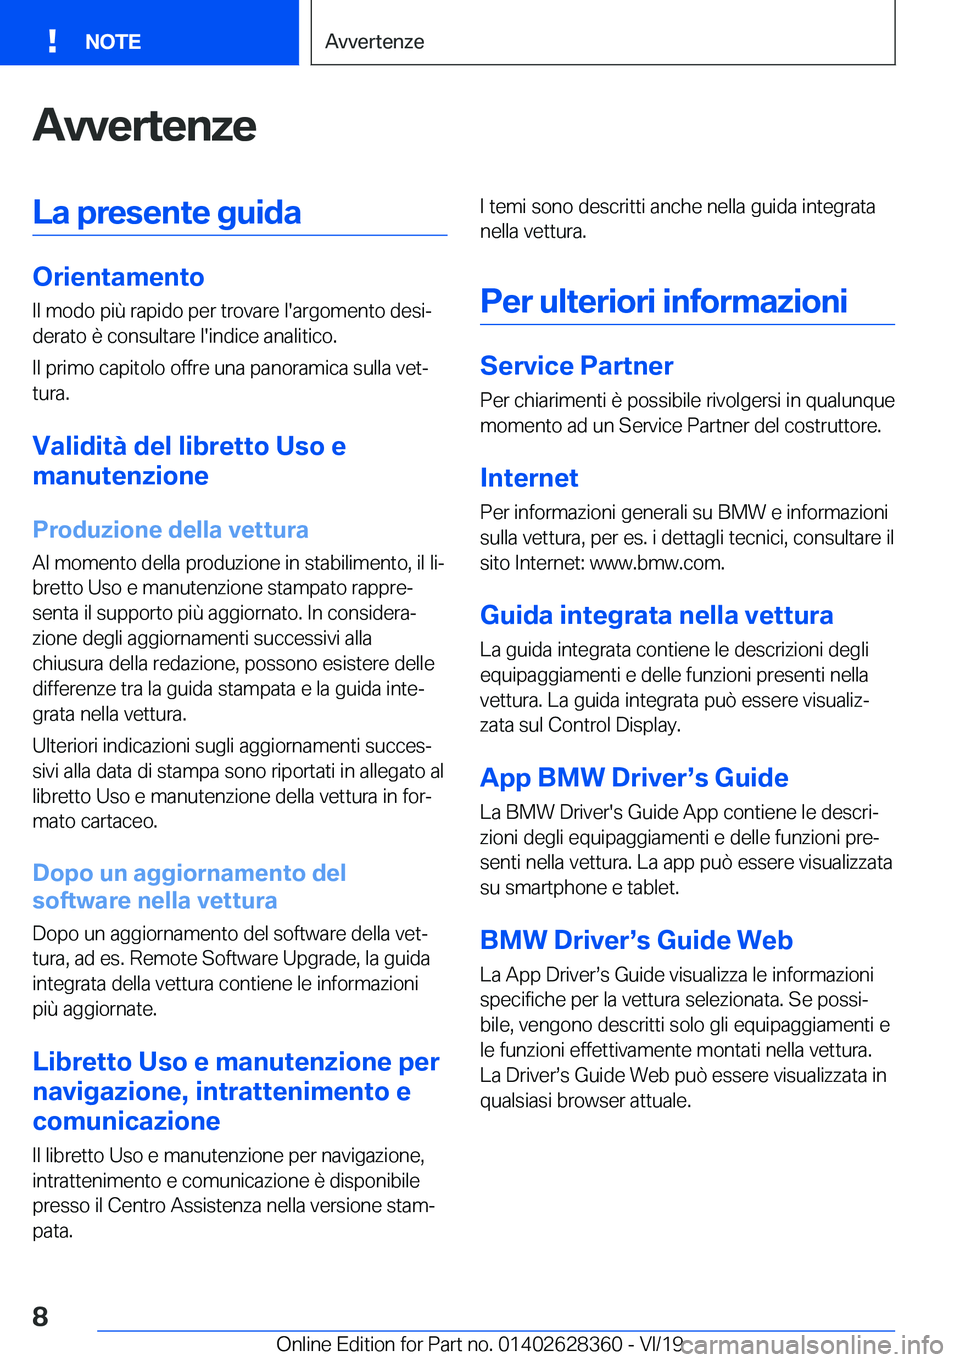 BMW 8 SERIES COUPE 2020  Libretti Di Uso E manutenzione (in Italian) �A�v�v�e�r�t�e�n�z�e�L�a��p�r�e�s�e�n�t�e��g�u�i�d�a
�O�r�i�e�n�t�a�m�e�n�t�o�I�l��m�o�d�o��p�i�